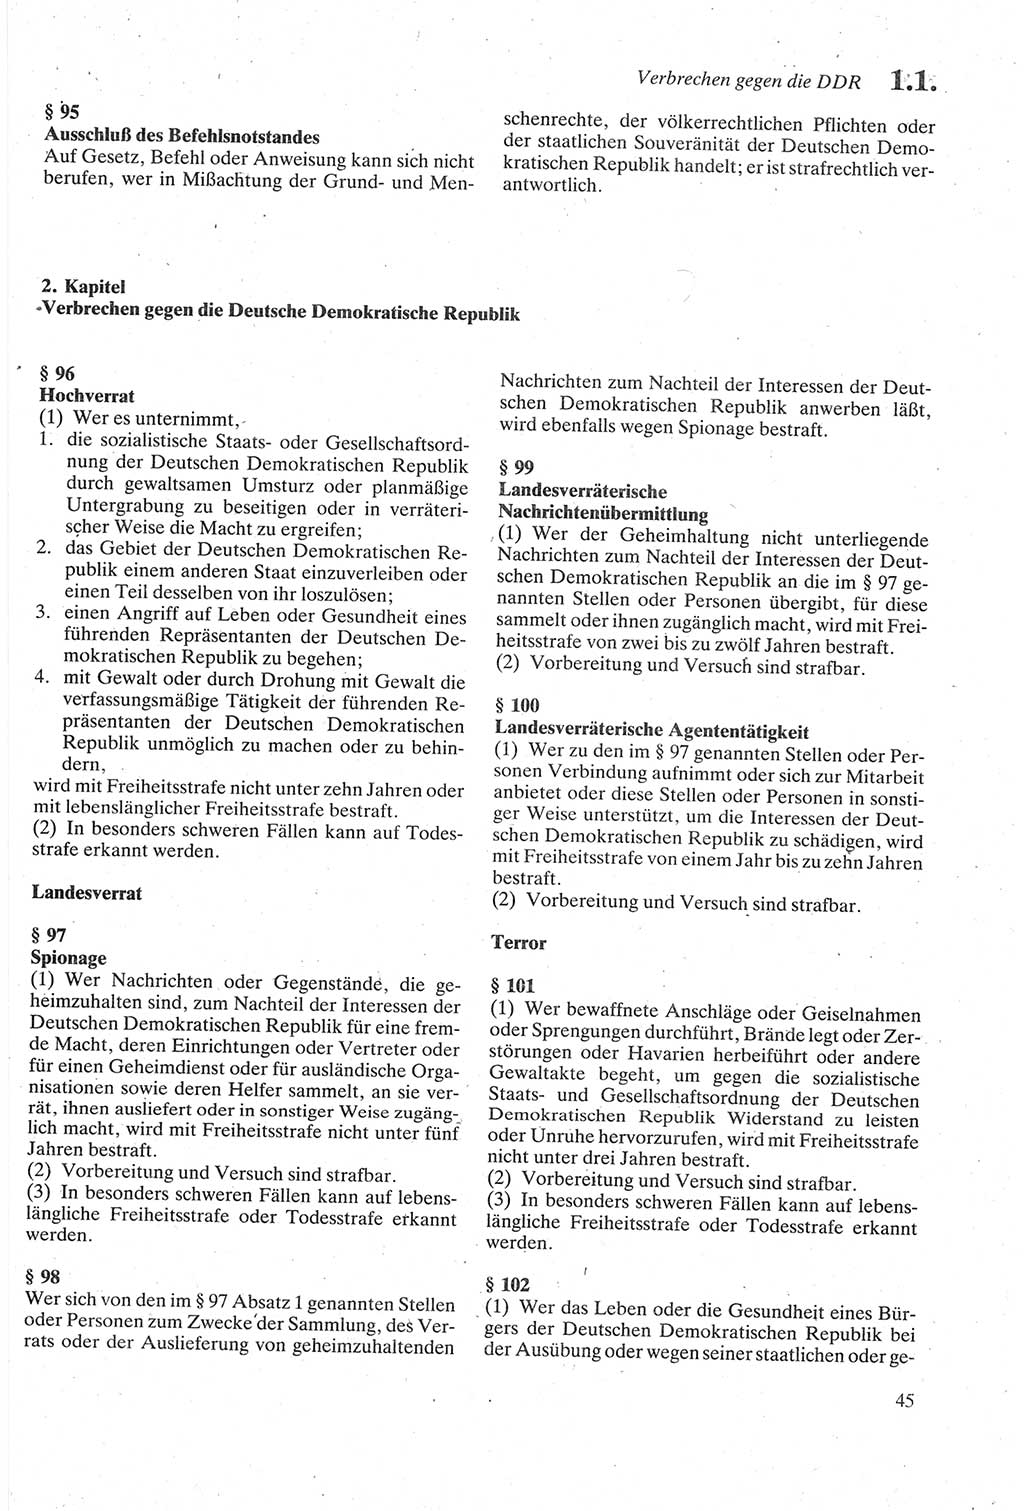 Strafgesetzbuch (StGB) der Deutschen Demokratischen Republik (DDR) sowie angrenzende Gesetze und Bestimmungen 1979, Seite 45 (StGB DDR Ges. Best. 1979, S. 45)